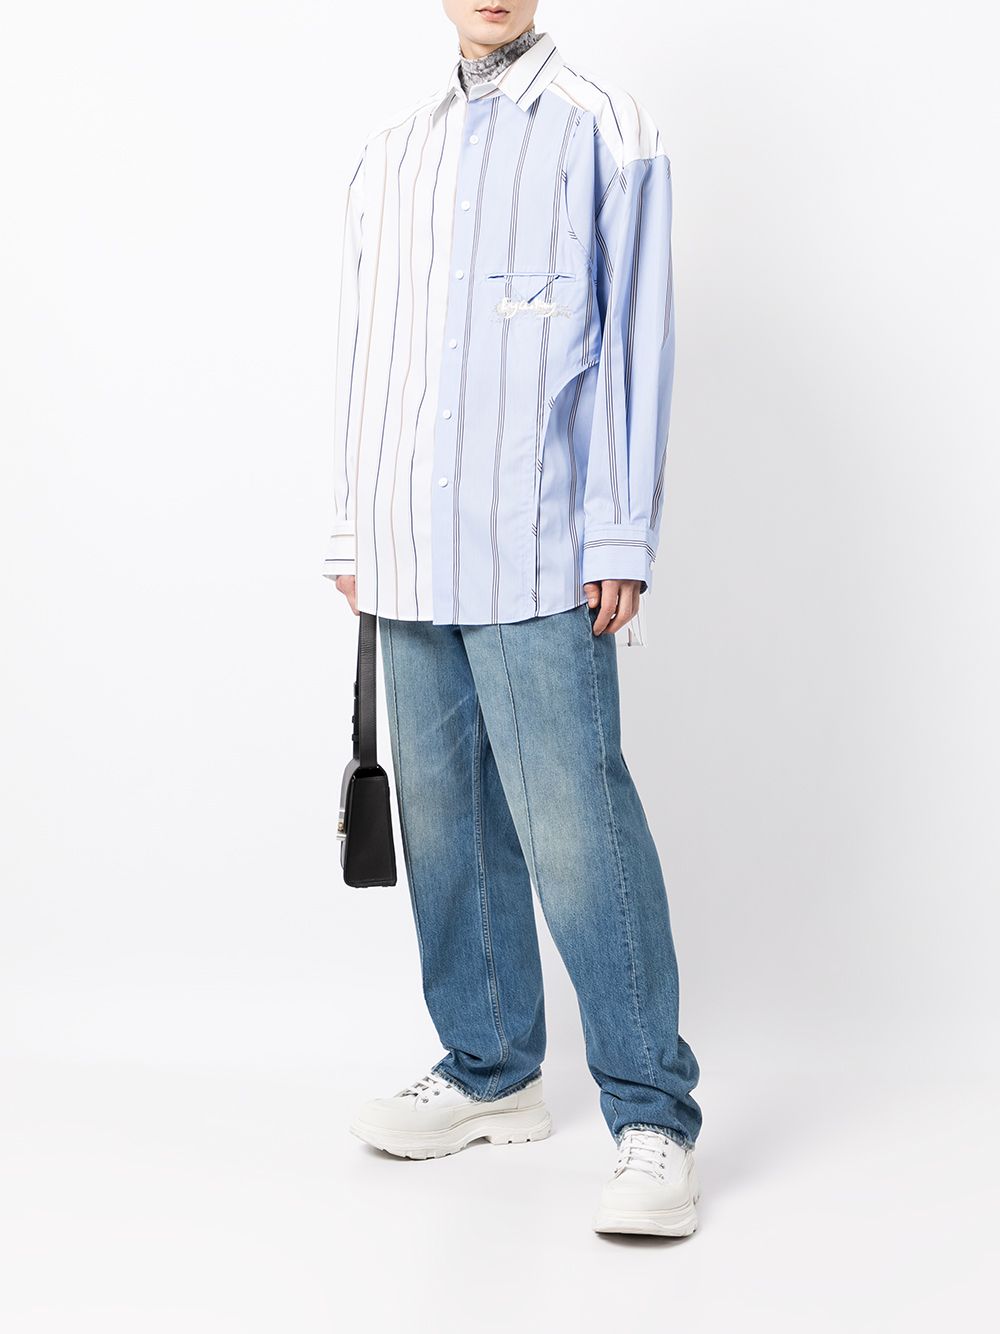 фото Feng chen wang полосатая рубашка с длинными рукавами